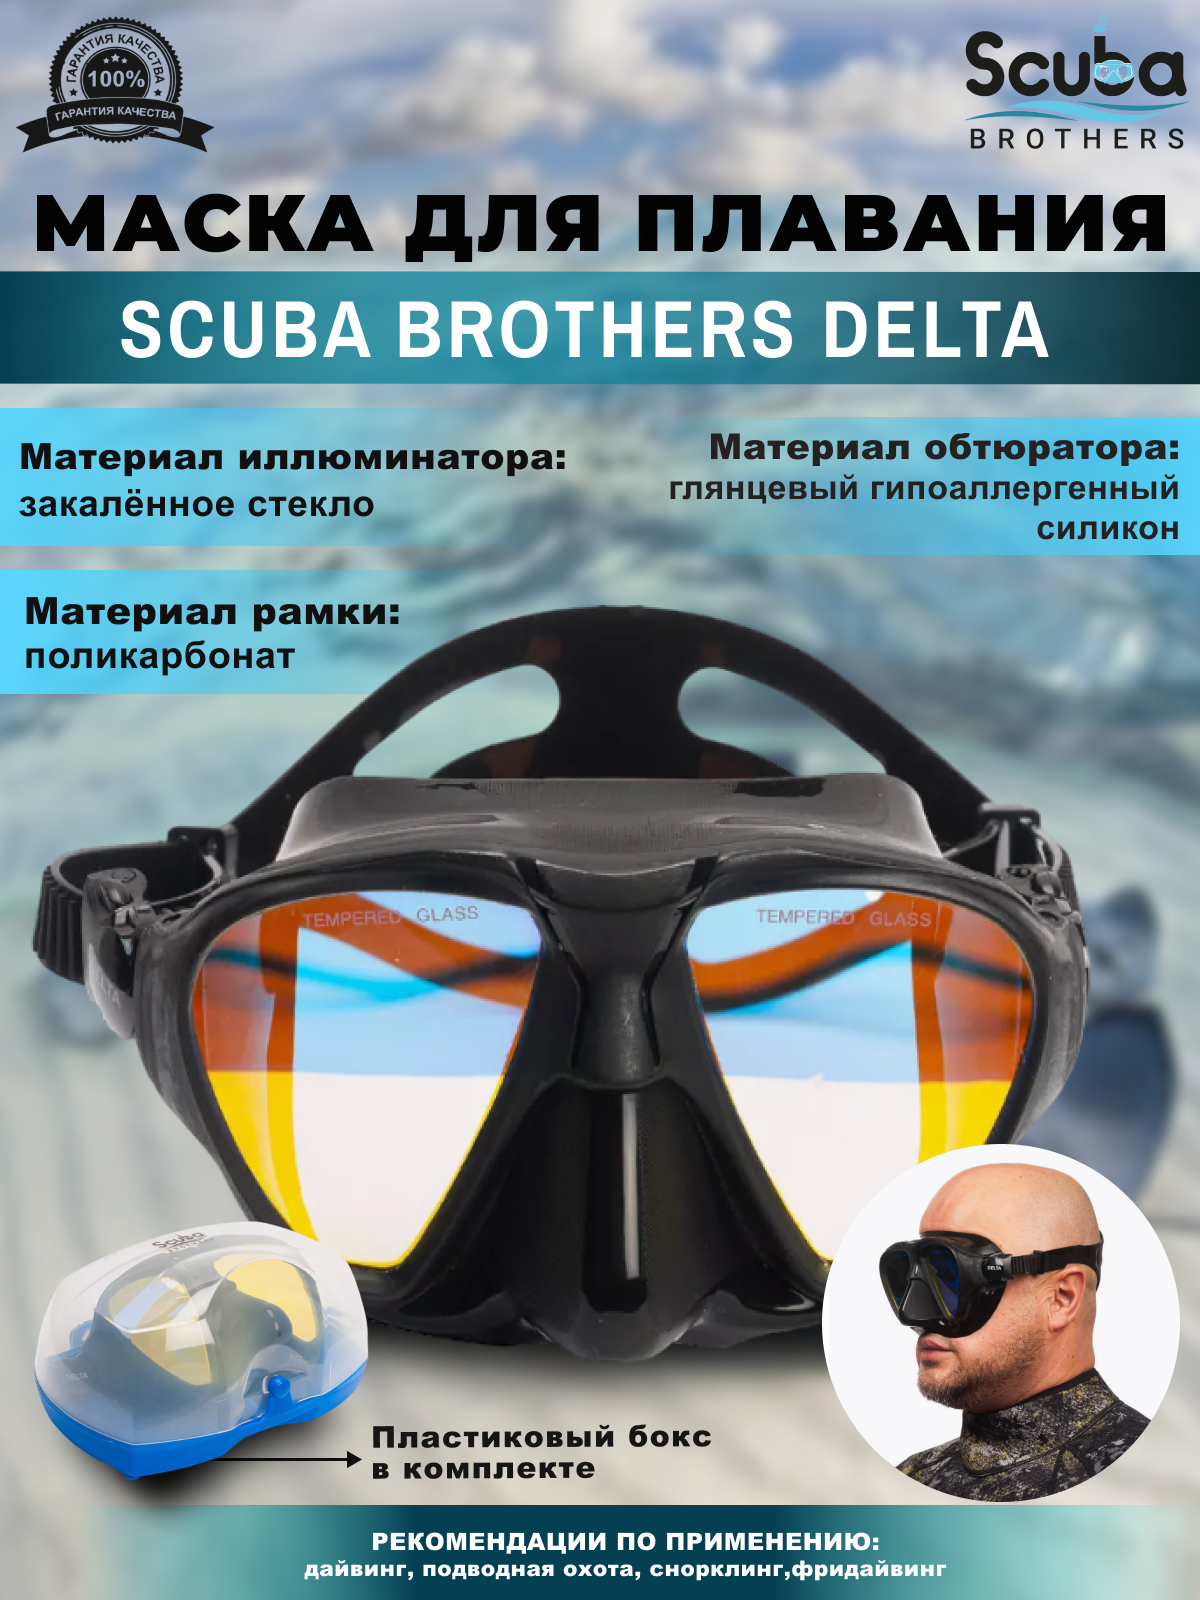 Маска для плавания SCUBA BROTHERS DELTA, просветленные стекла